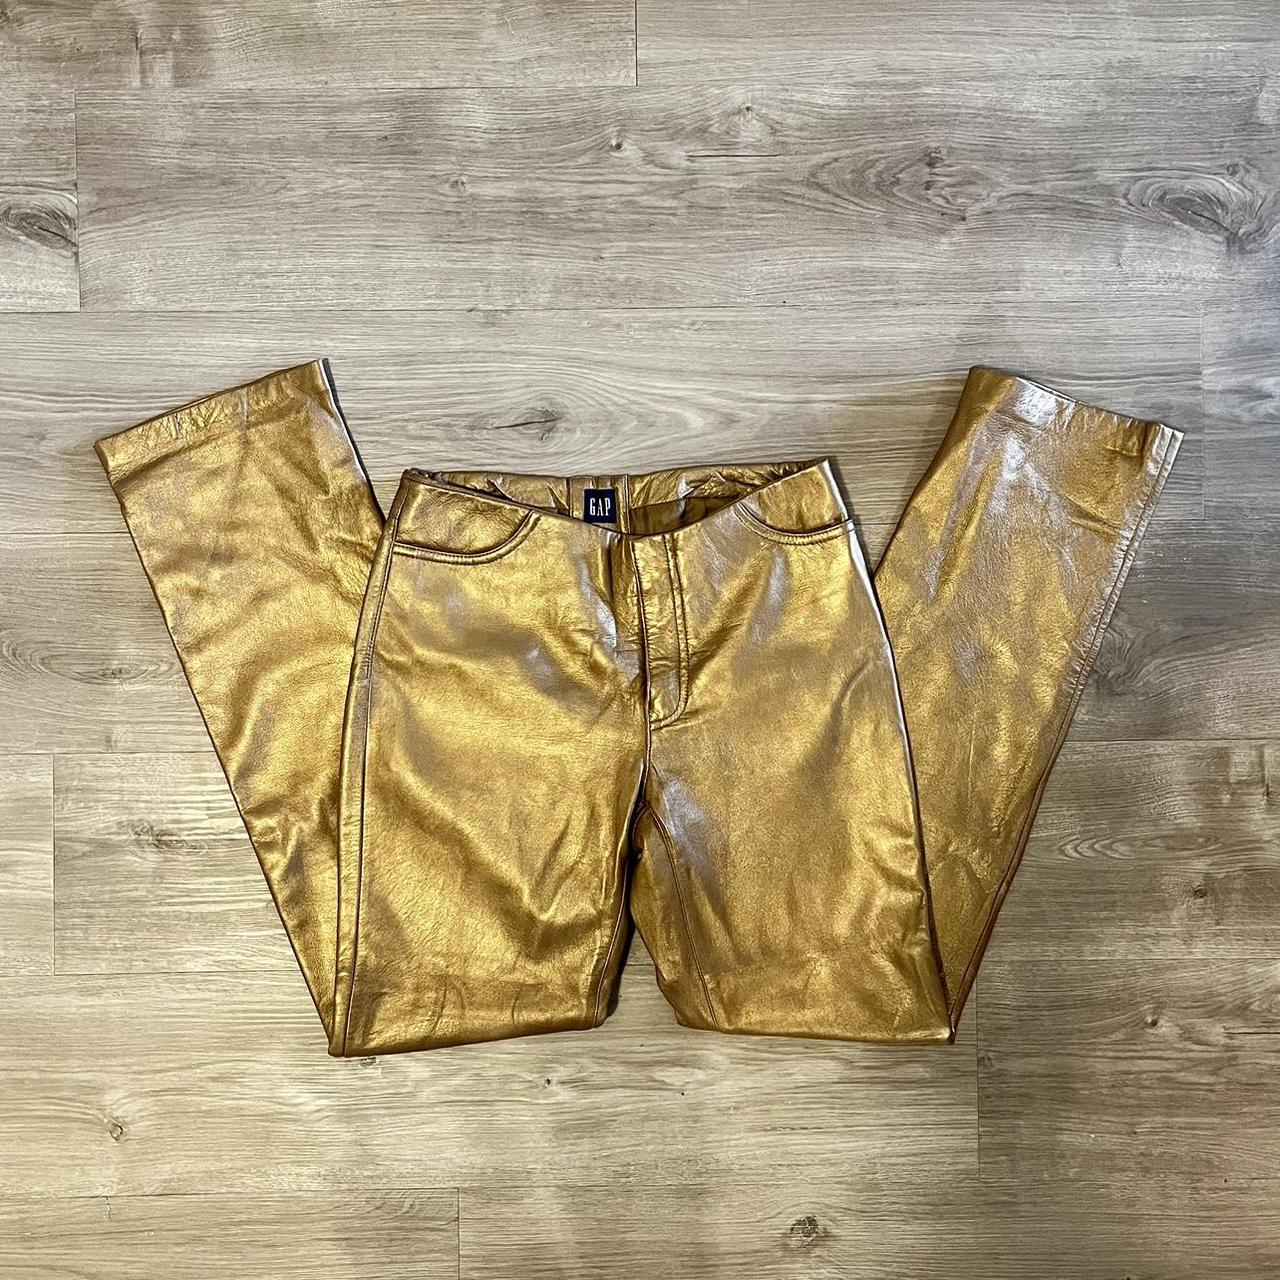 Super fun vintage gold leather pants Strait leg,... - Depop